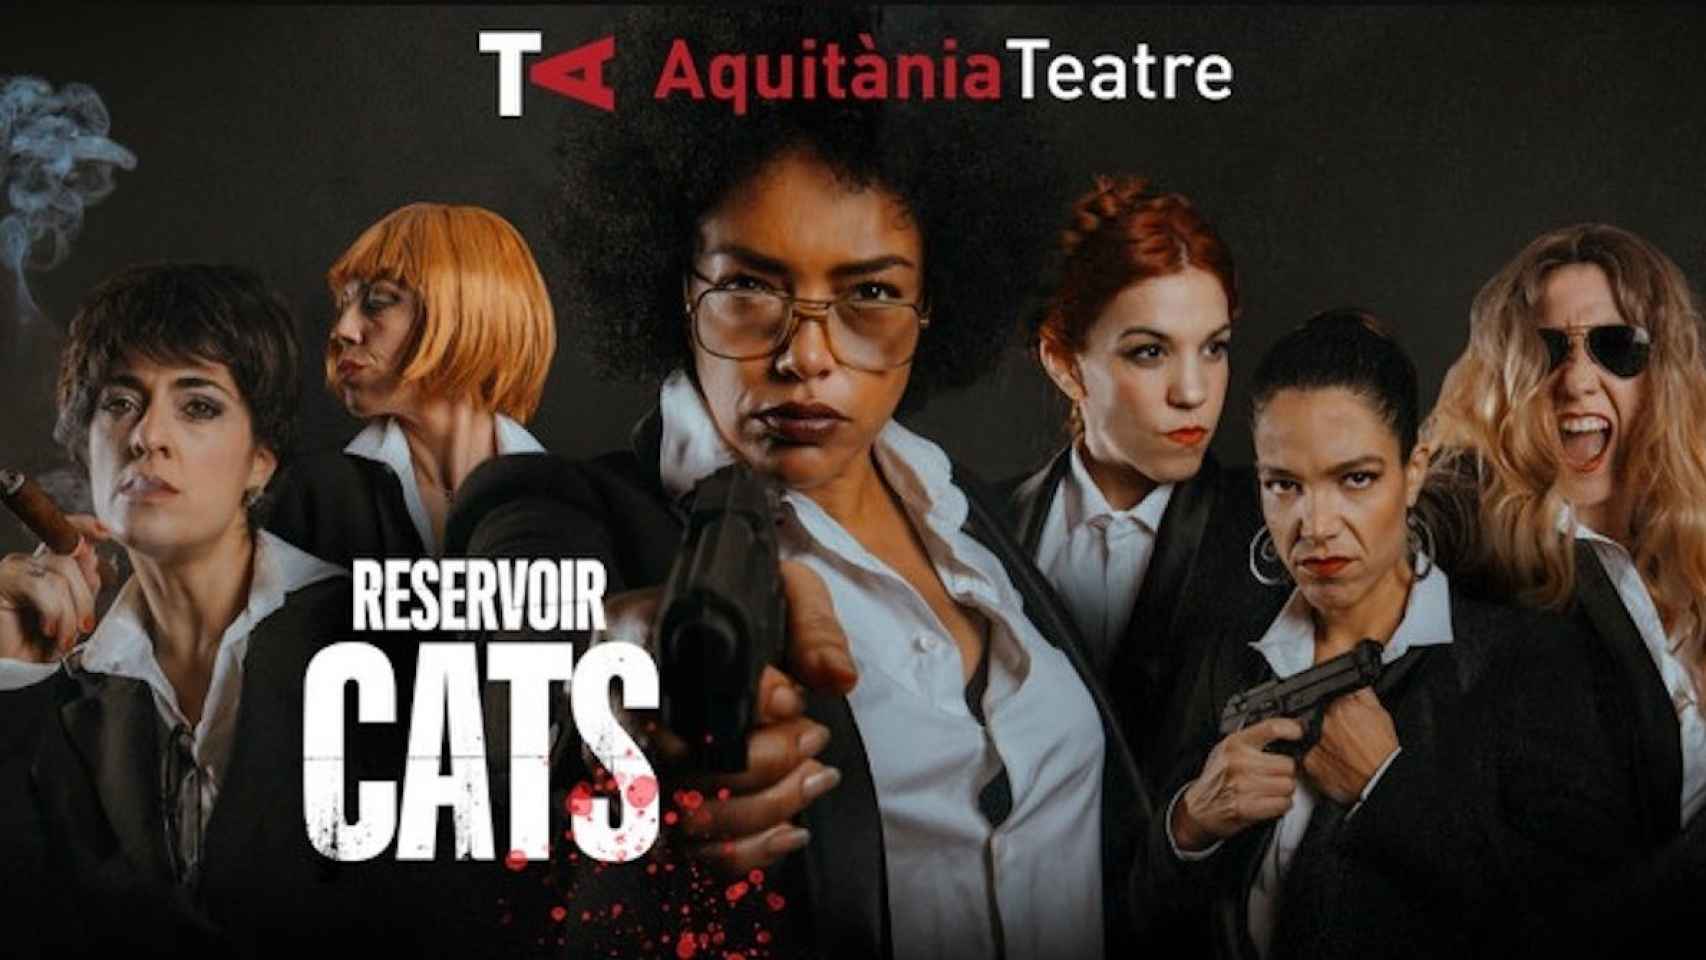 Cartel de la obra 'Reservoir Cats', que se estrenó en el Aquitània Teatre de Barcelona el pasado 16 de enero